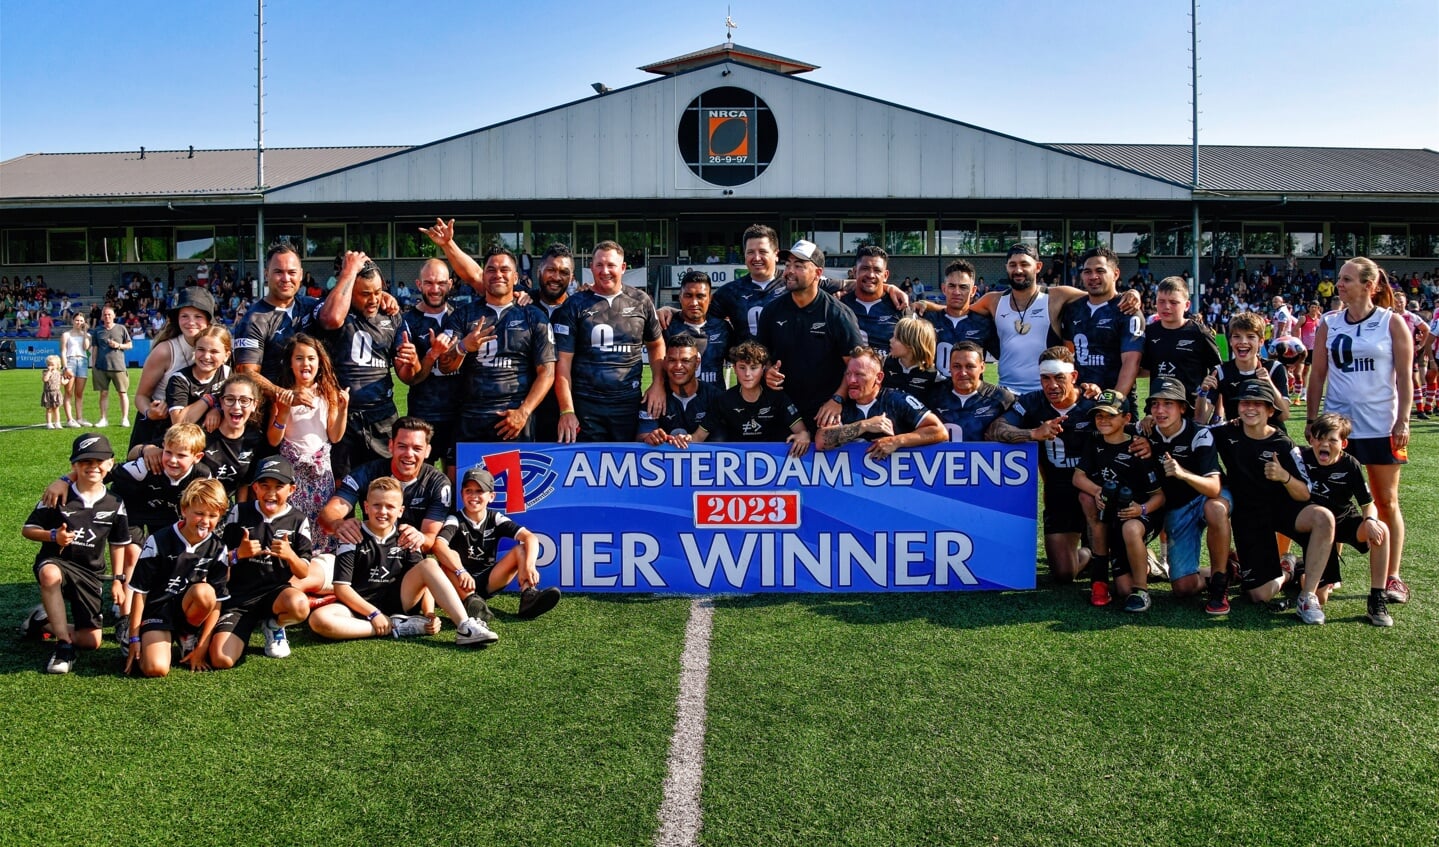 HAKA Rugby Global uit Nieuw-Zeeland wint de Pier Elite (Vets 10s).